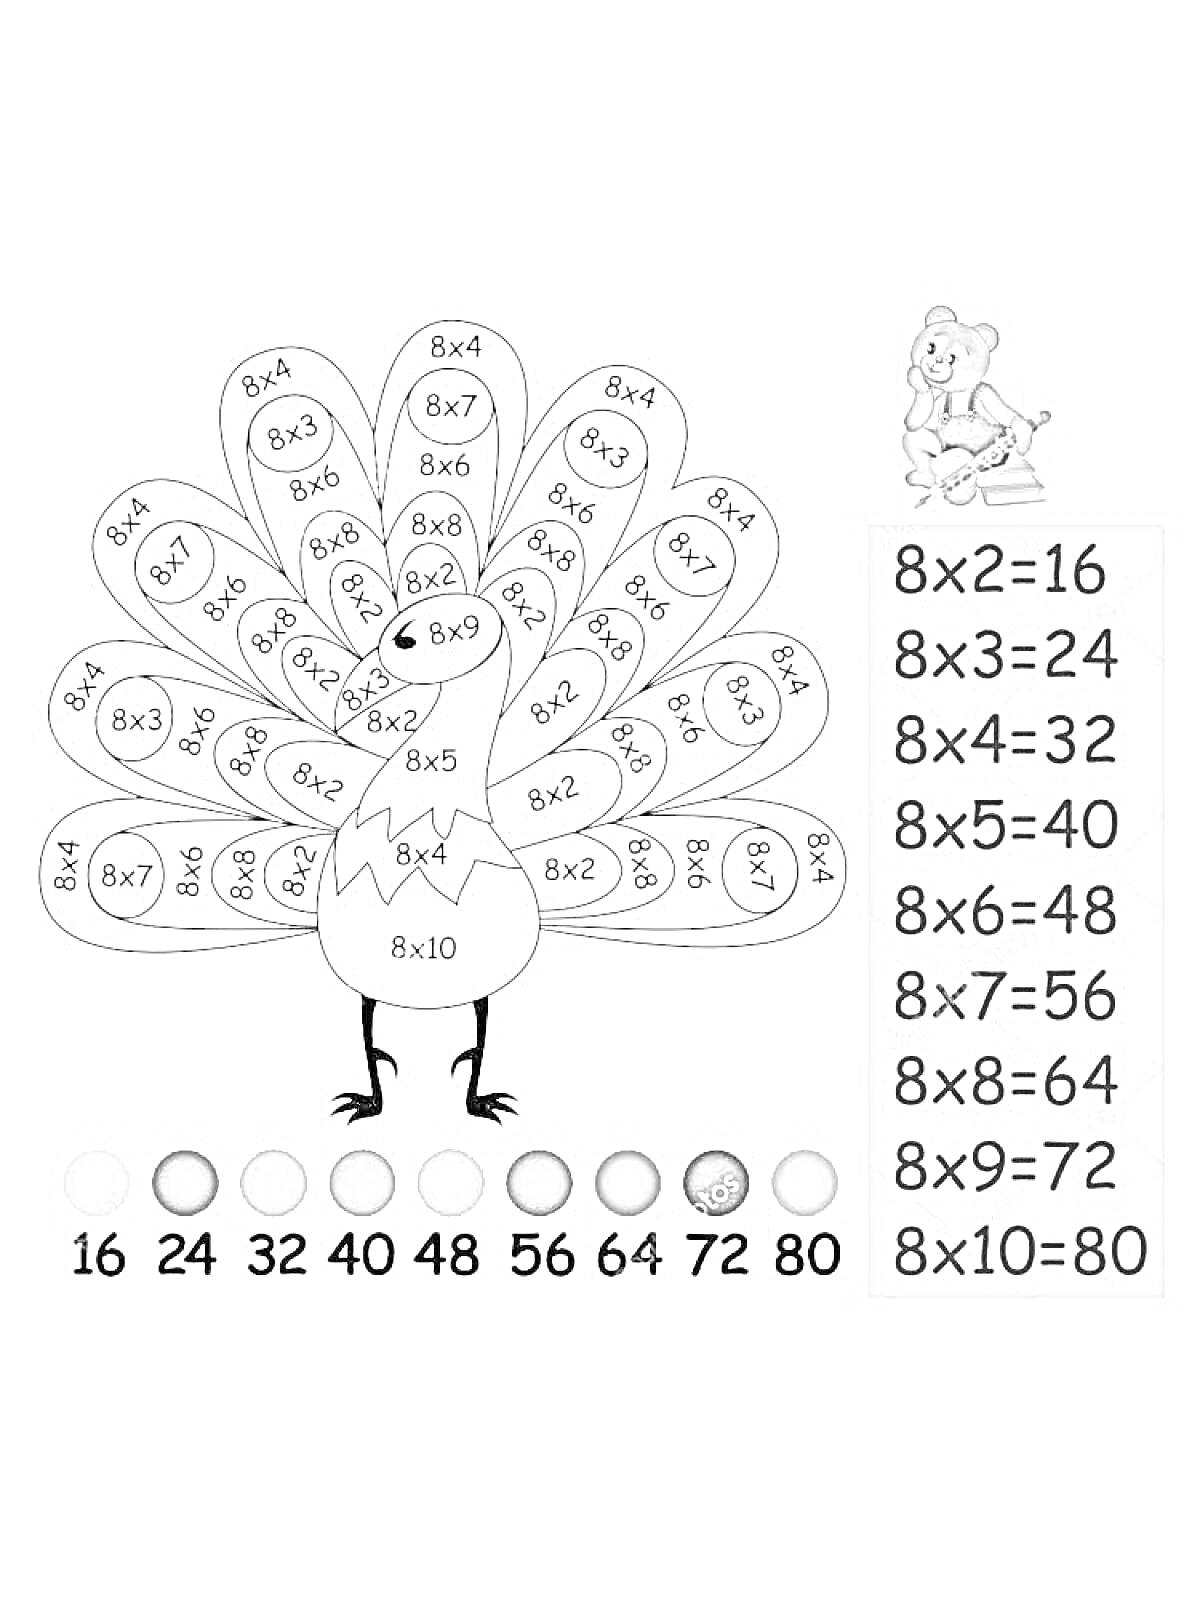 Раскраска — Таблица умножения на 8 — Индейка с числами, Цветовое соответствие